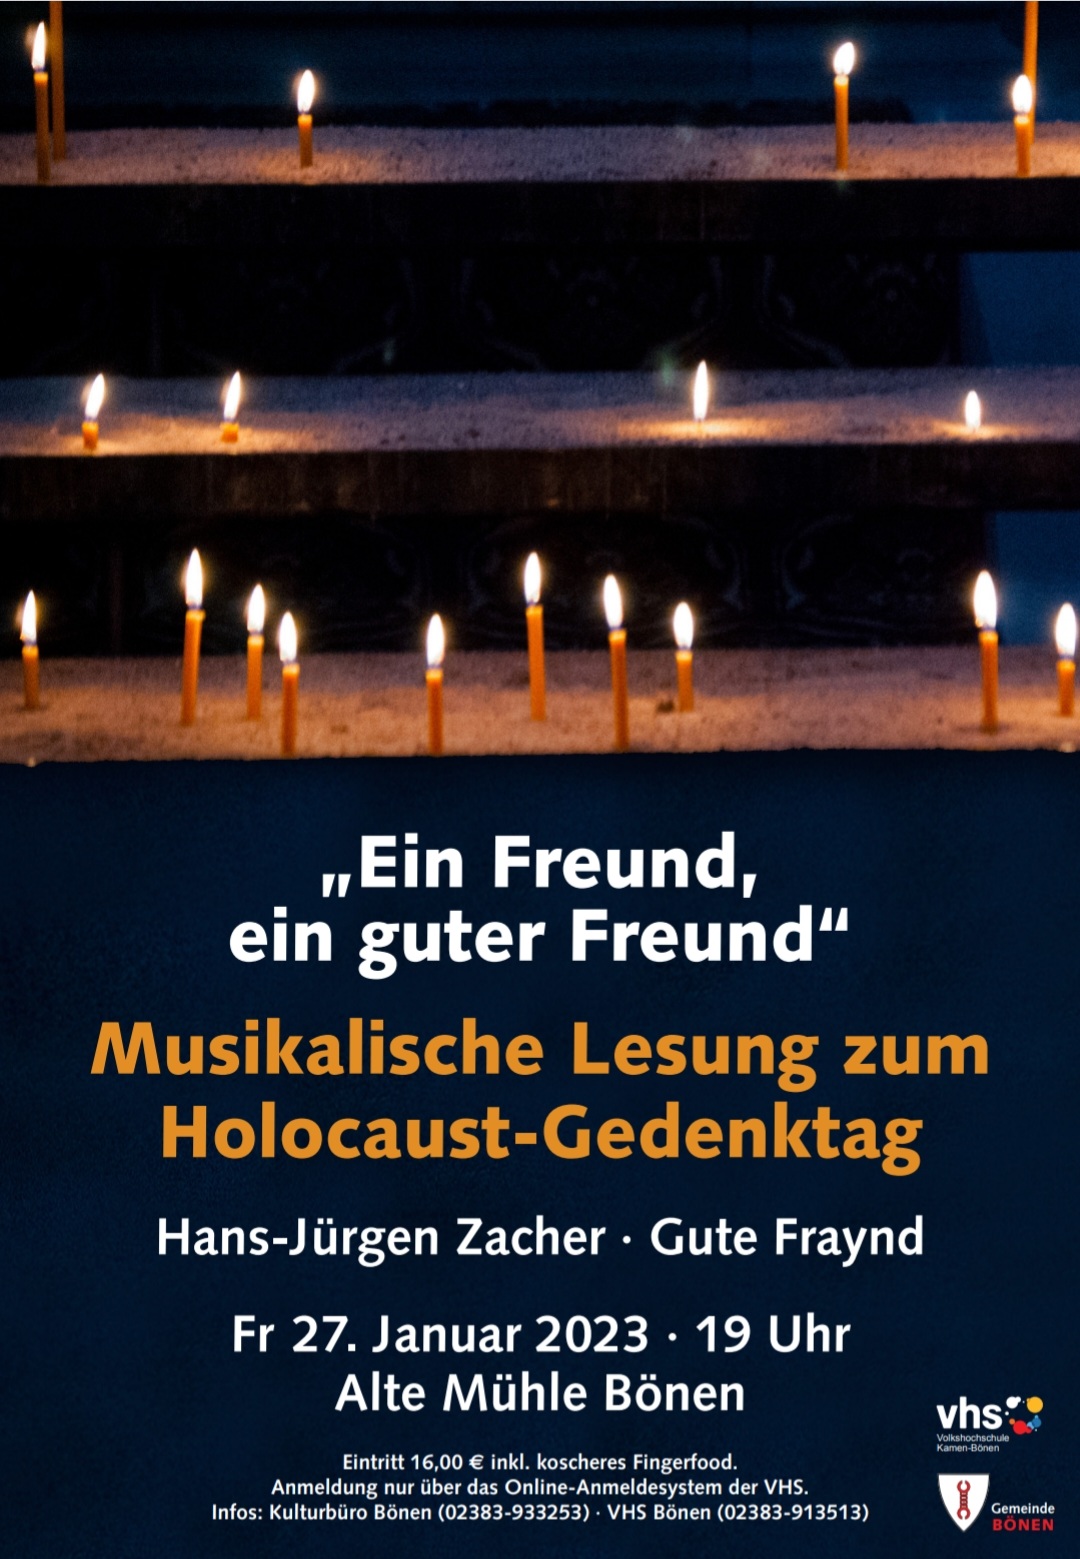 „Ein Freund, ein guter Freund“ – Musikalische Lesung zum Holocaust-Gedenktag am 27.01.2023 in der VHS Bönen